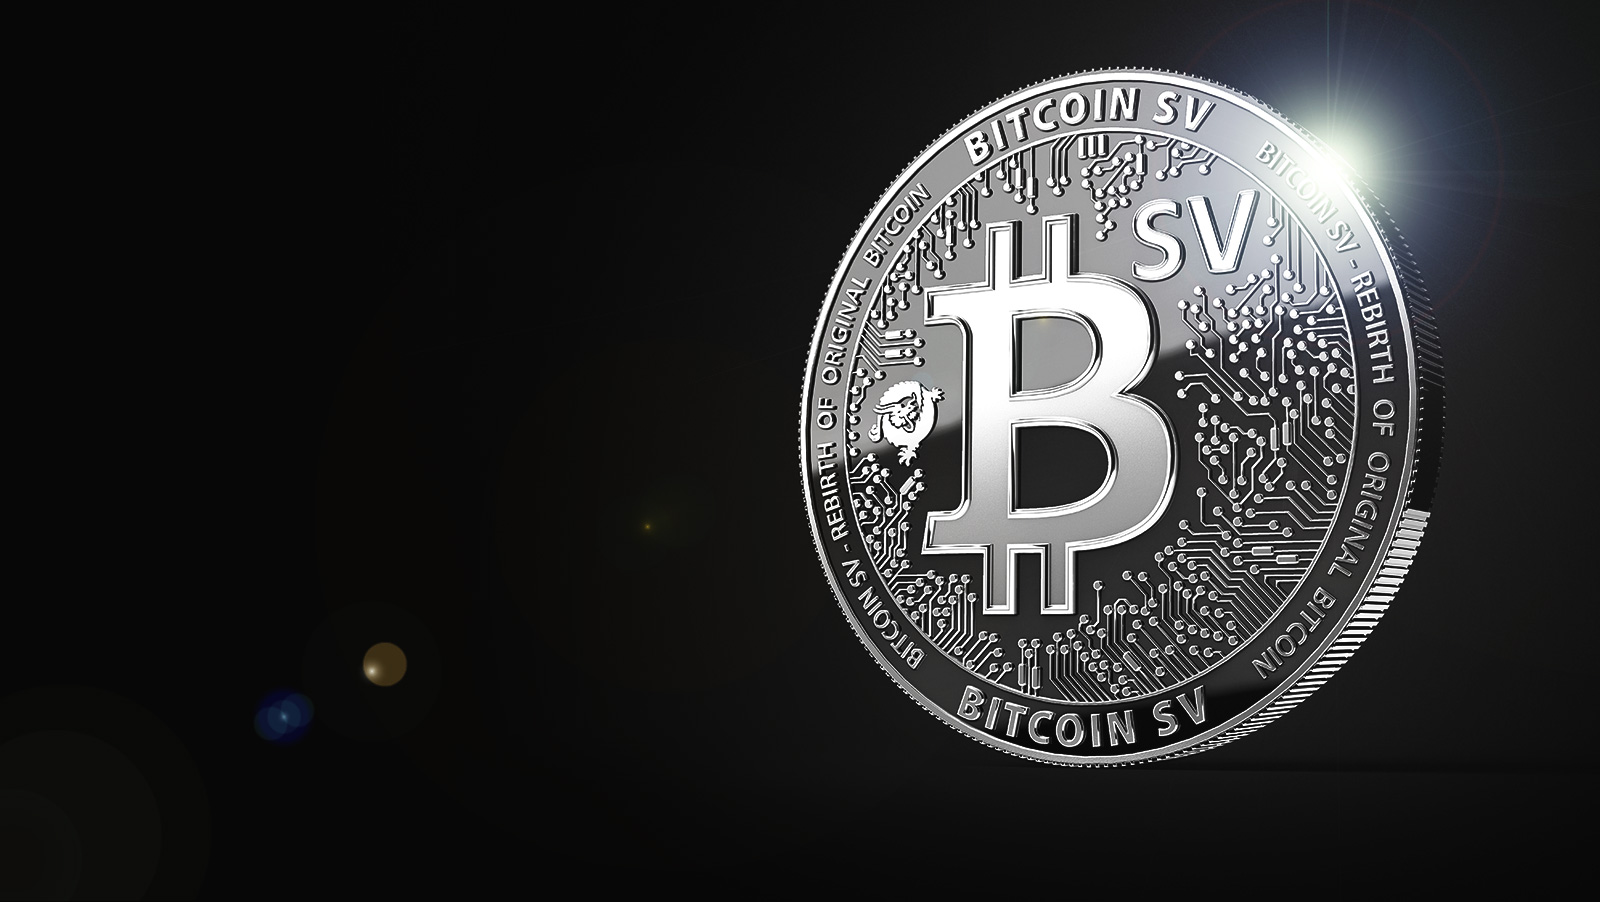 Wales Bitcoin SV BSV Hiçbir Şey Sunmuyor